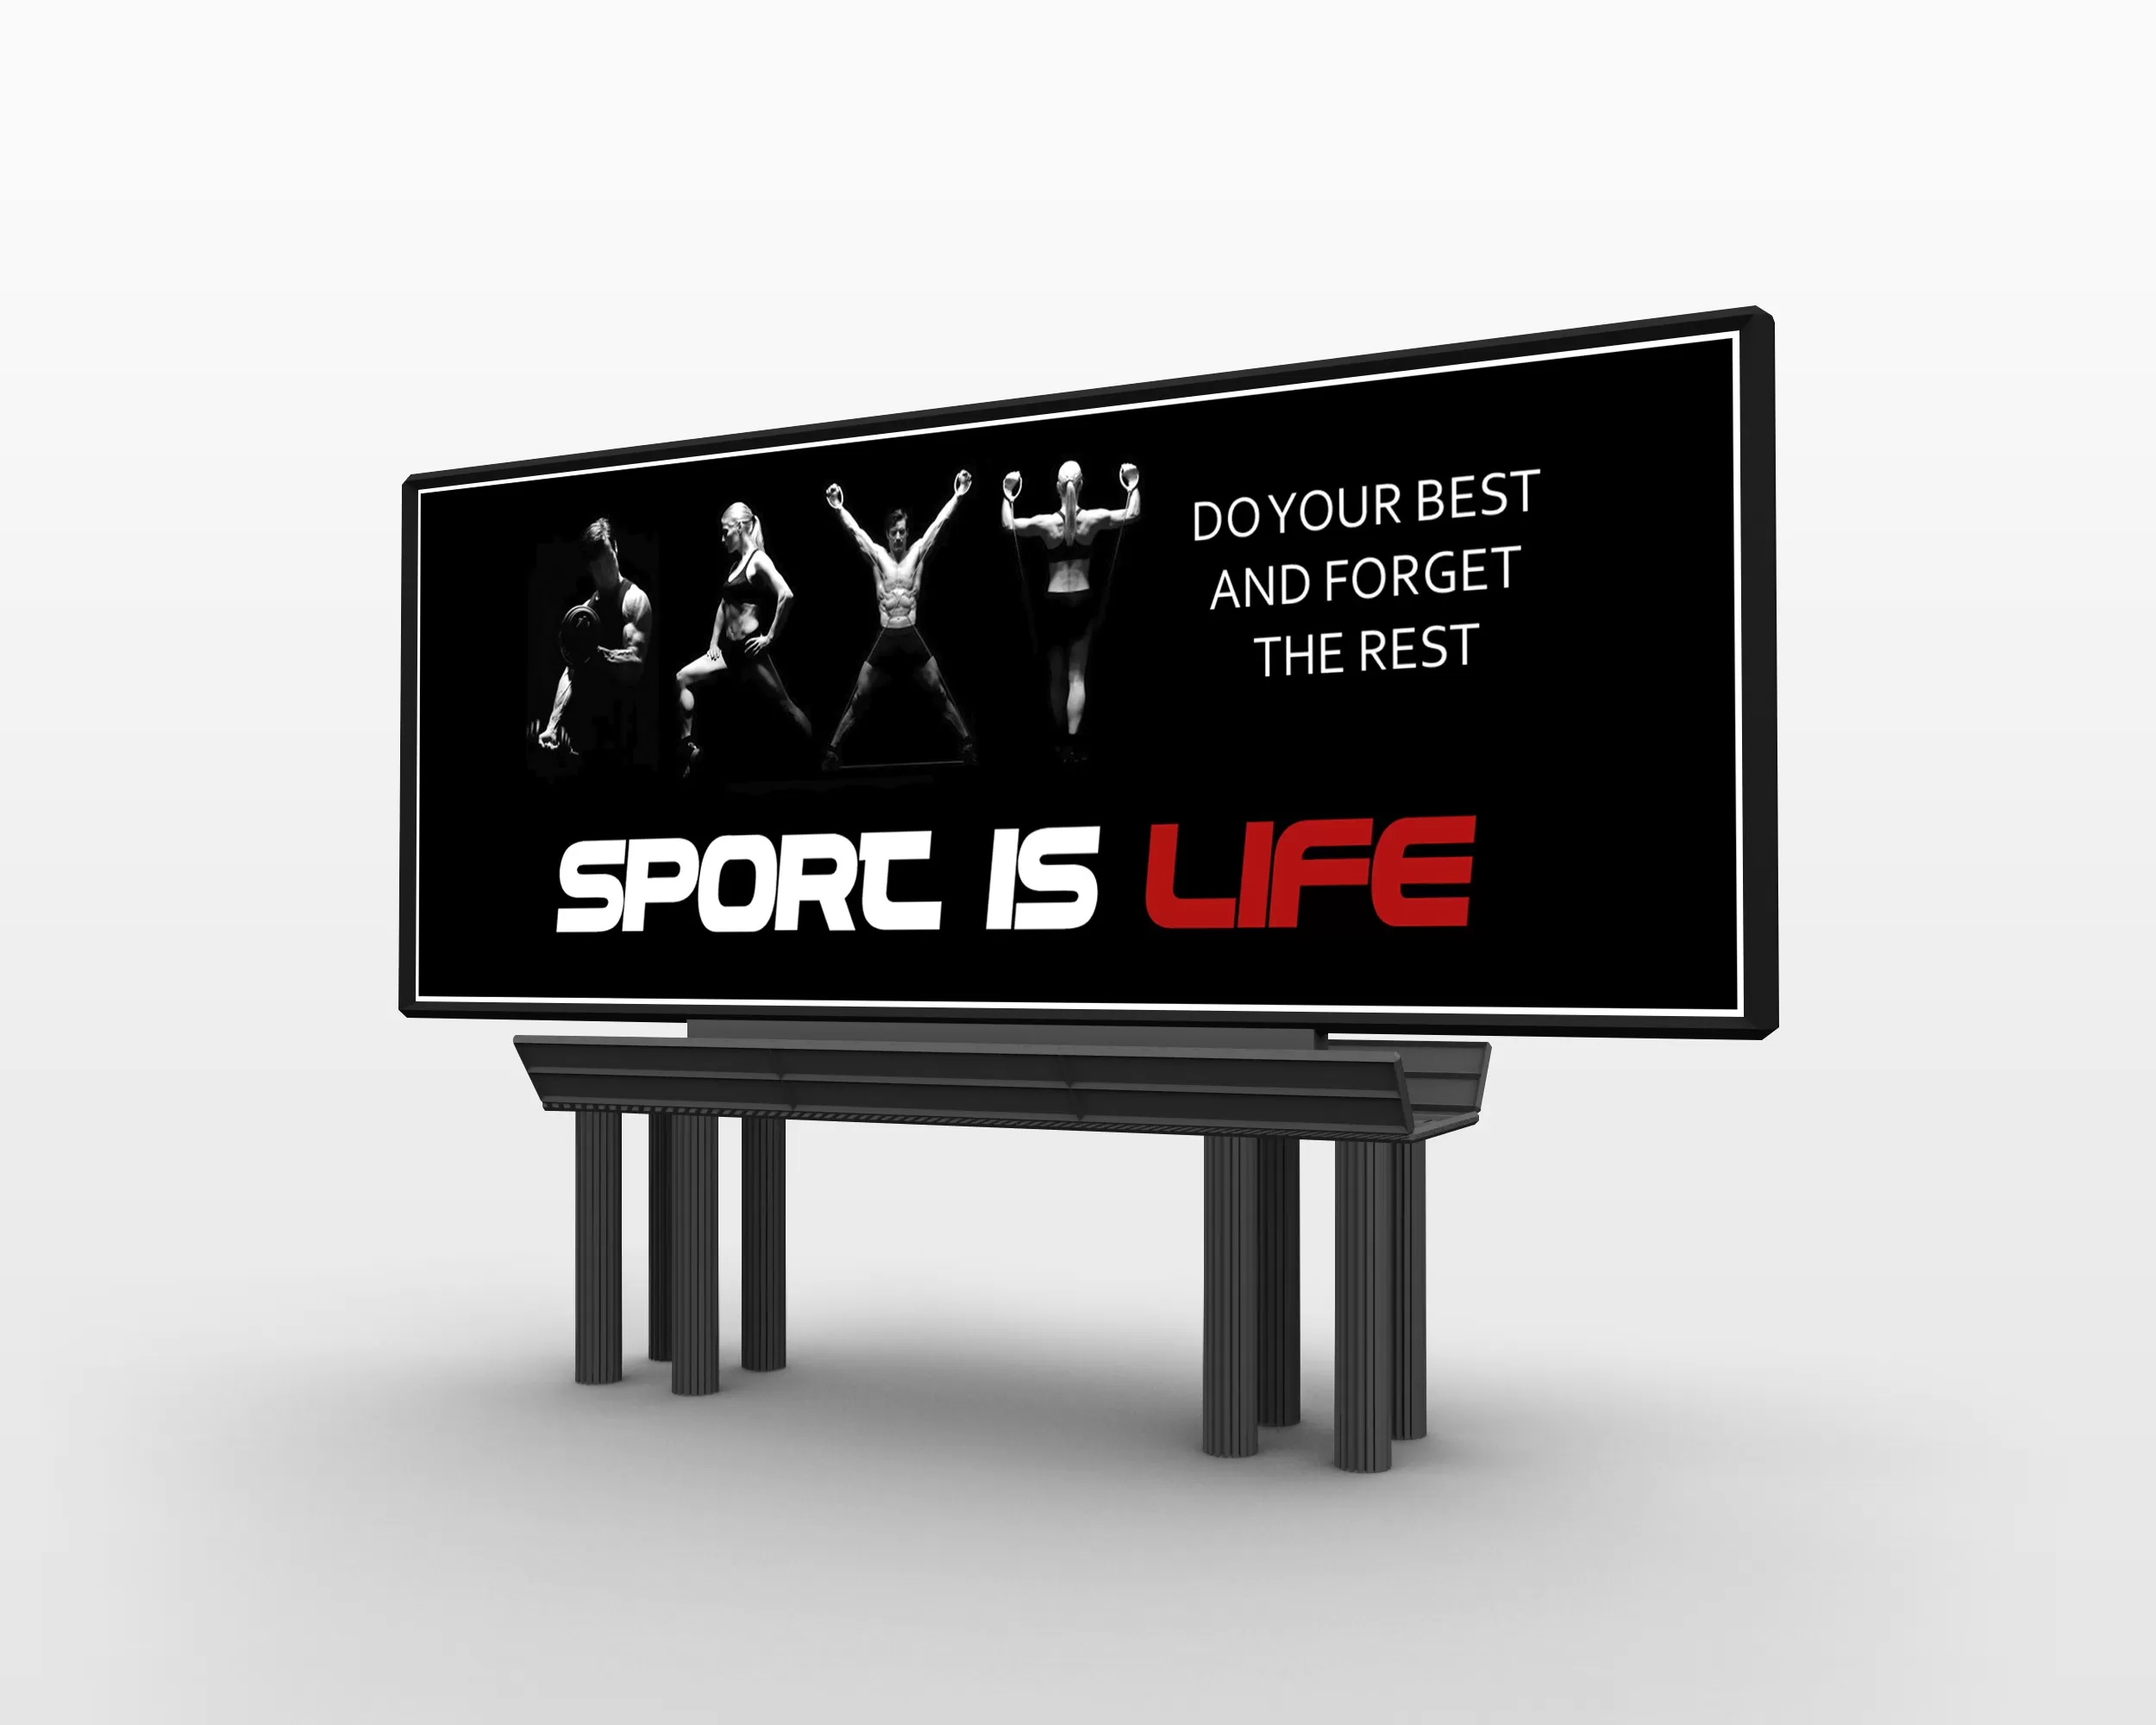 Дизайн рекламного банера Sport Life